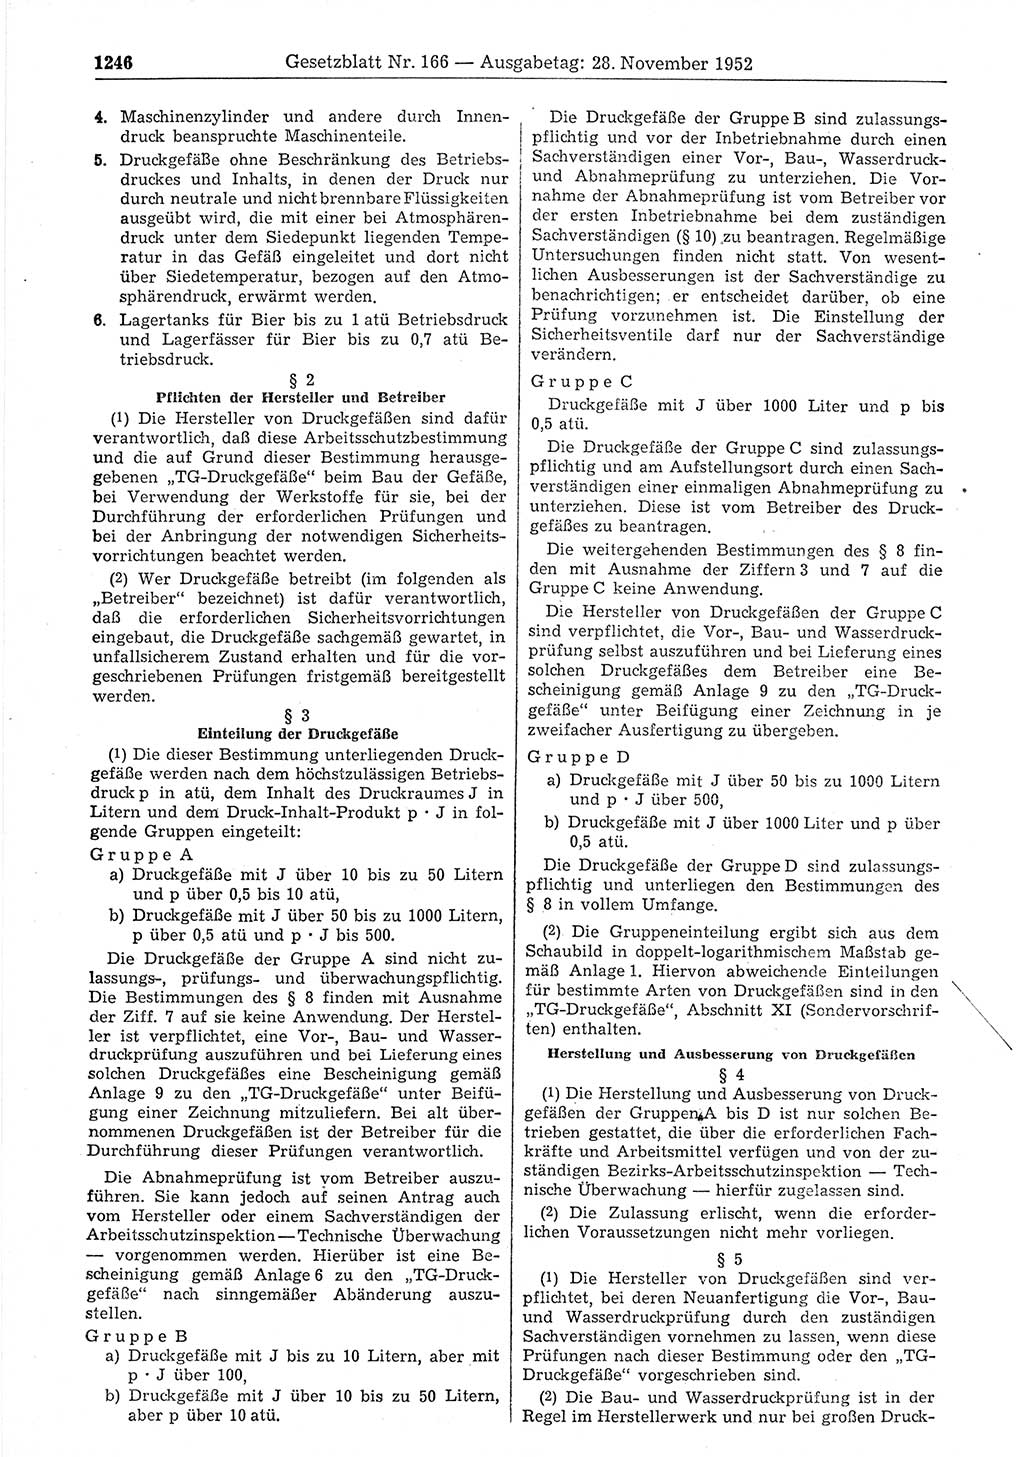 Gesetzblatt (GBl.) der Deutschen Demokratischen Republik (DDR) 1952, Seite 1246 (GBl. DDR 1952, S. 1246)